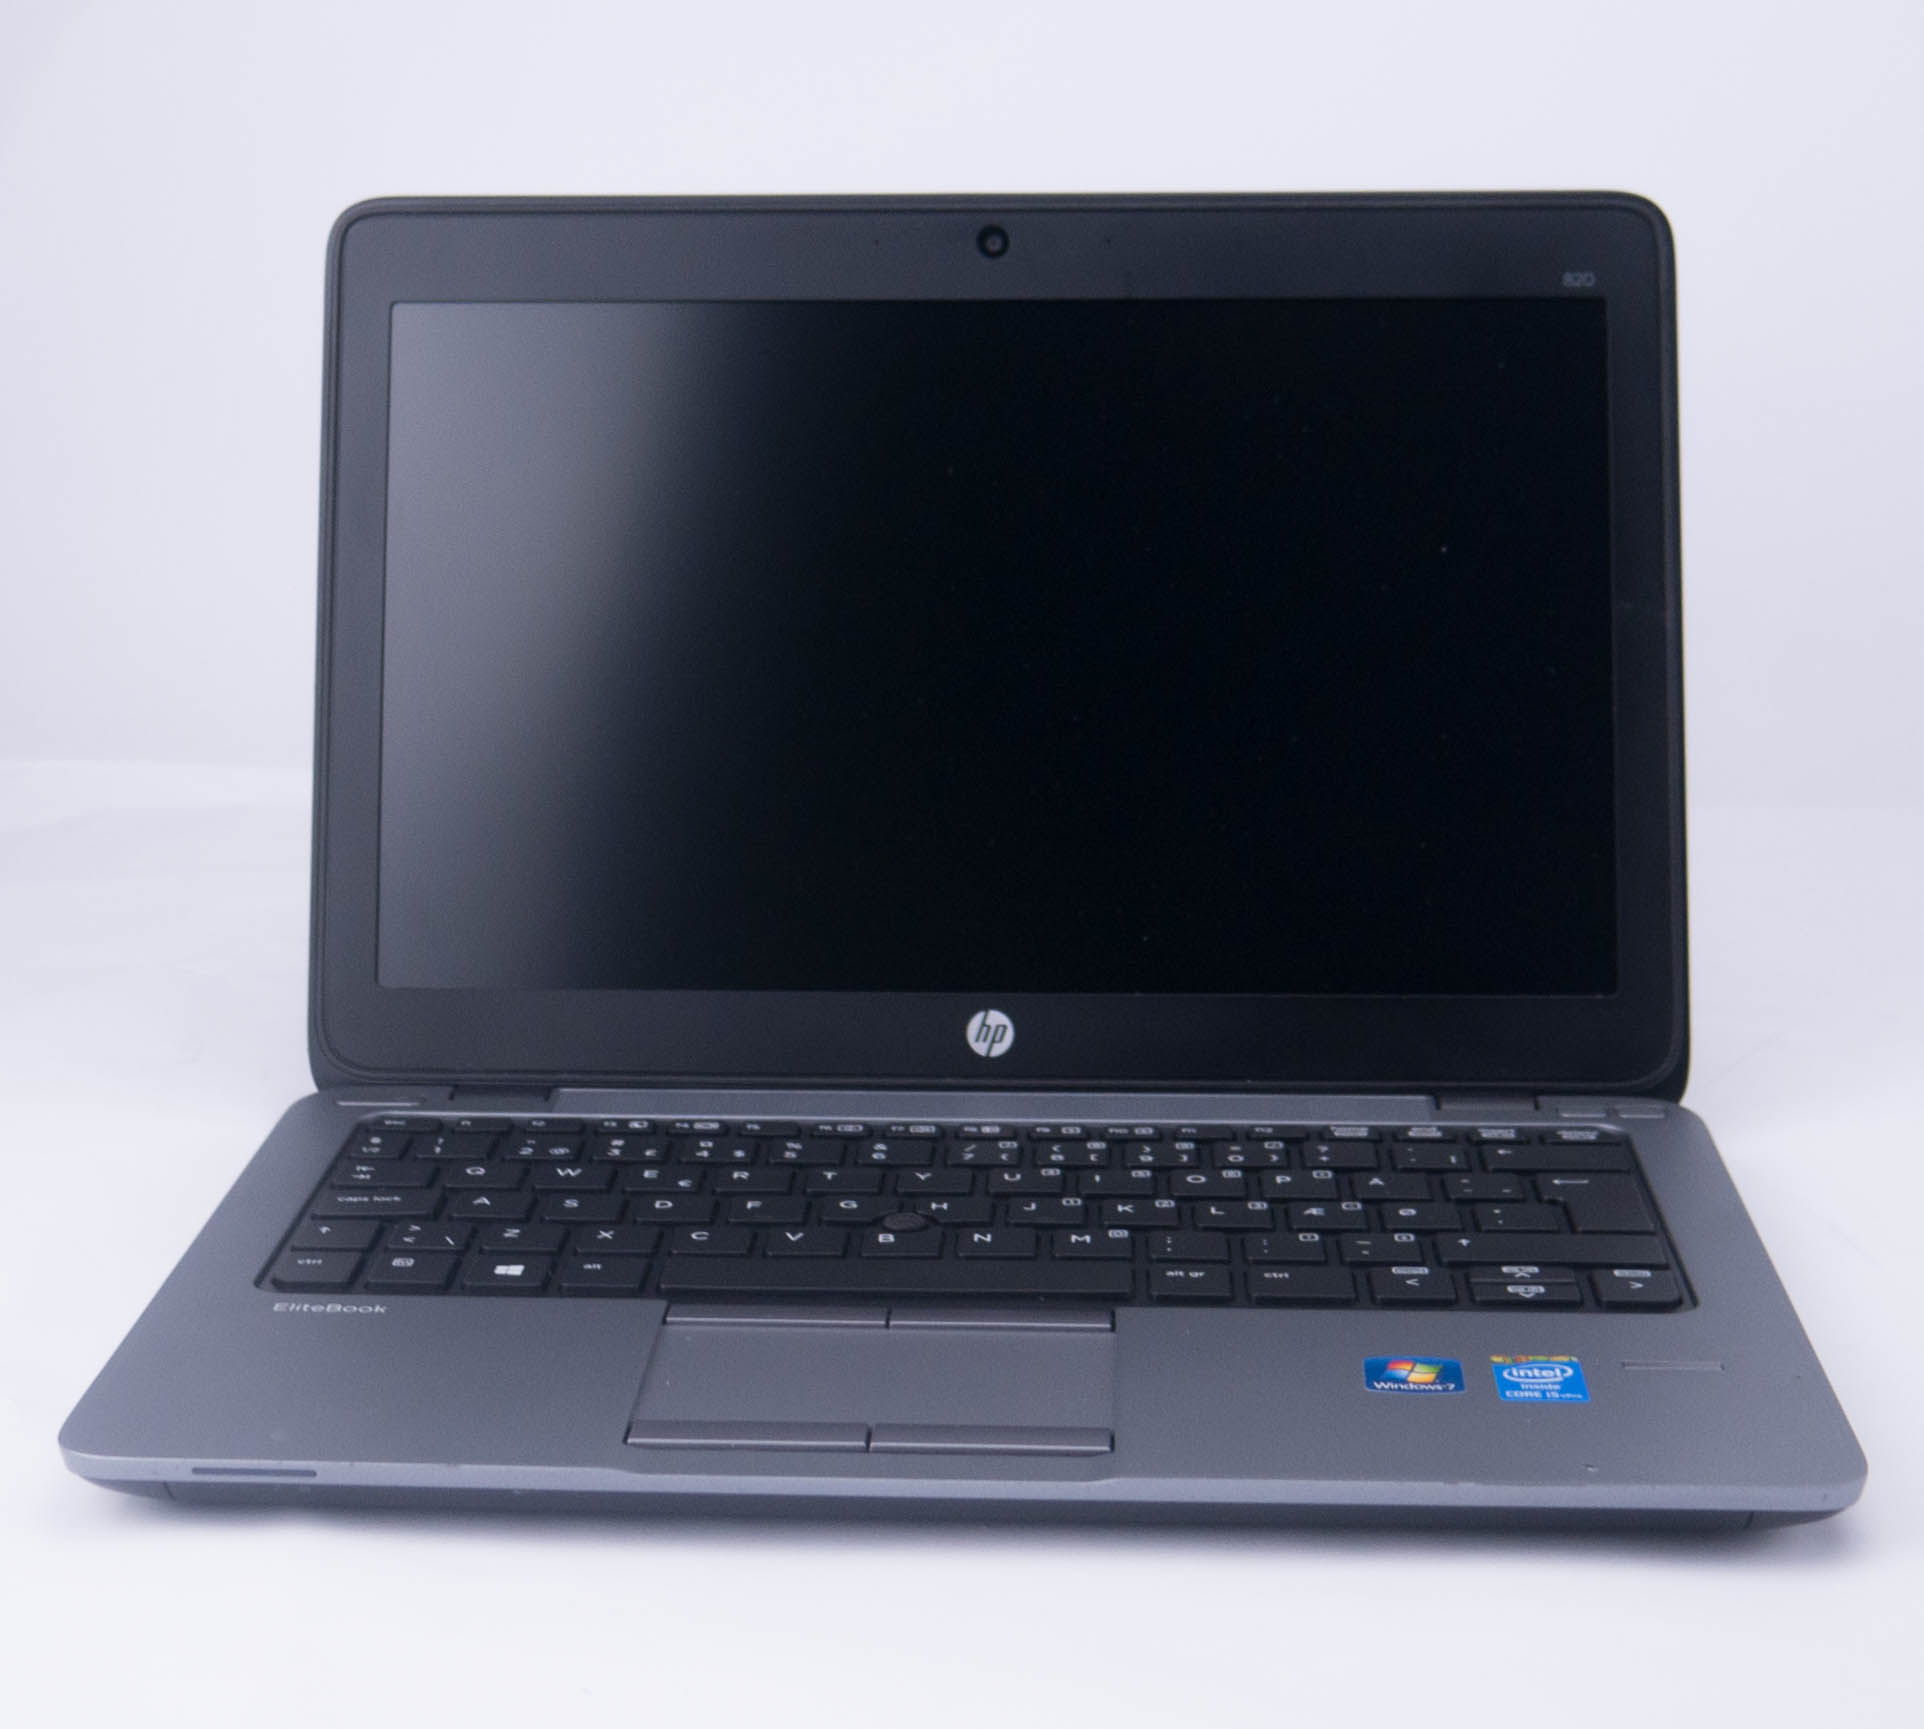 HP EliteBook 820 G1 Клас Б| Лаптопи втора ръка | iZone